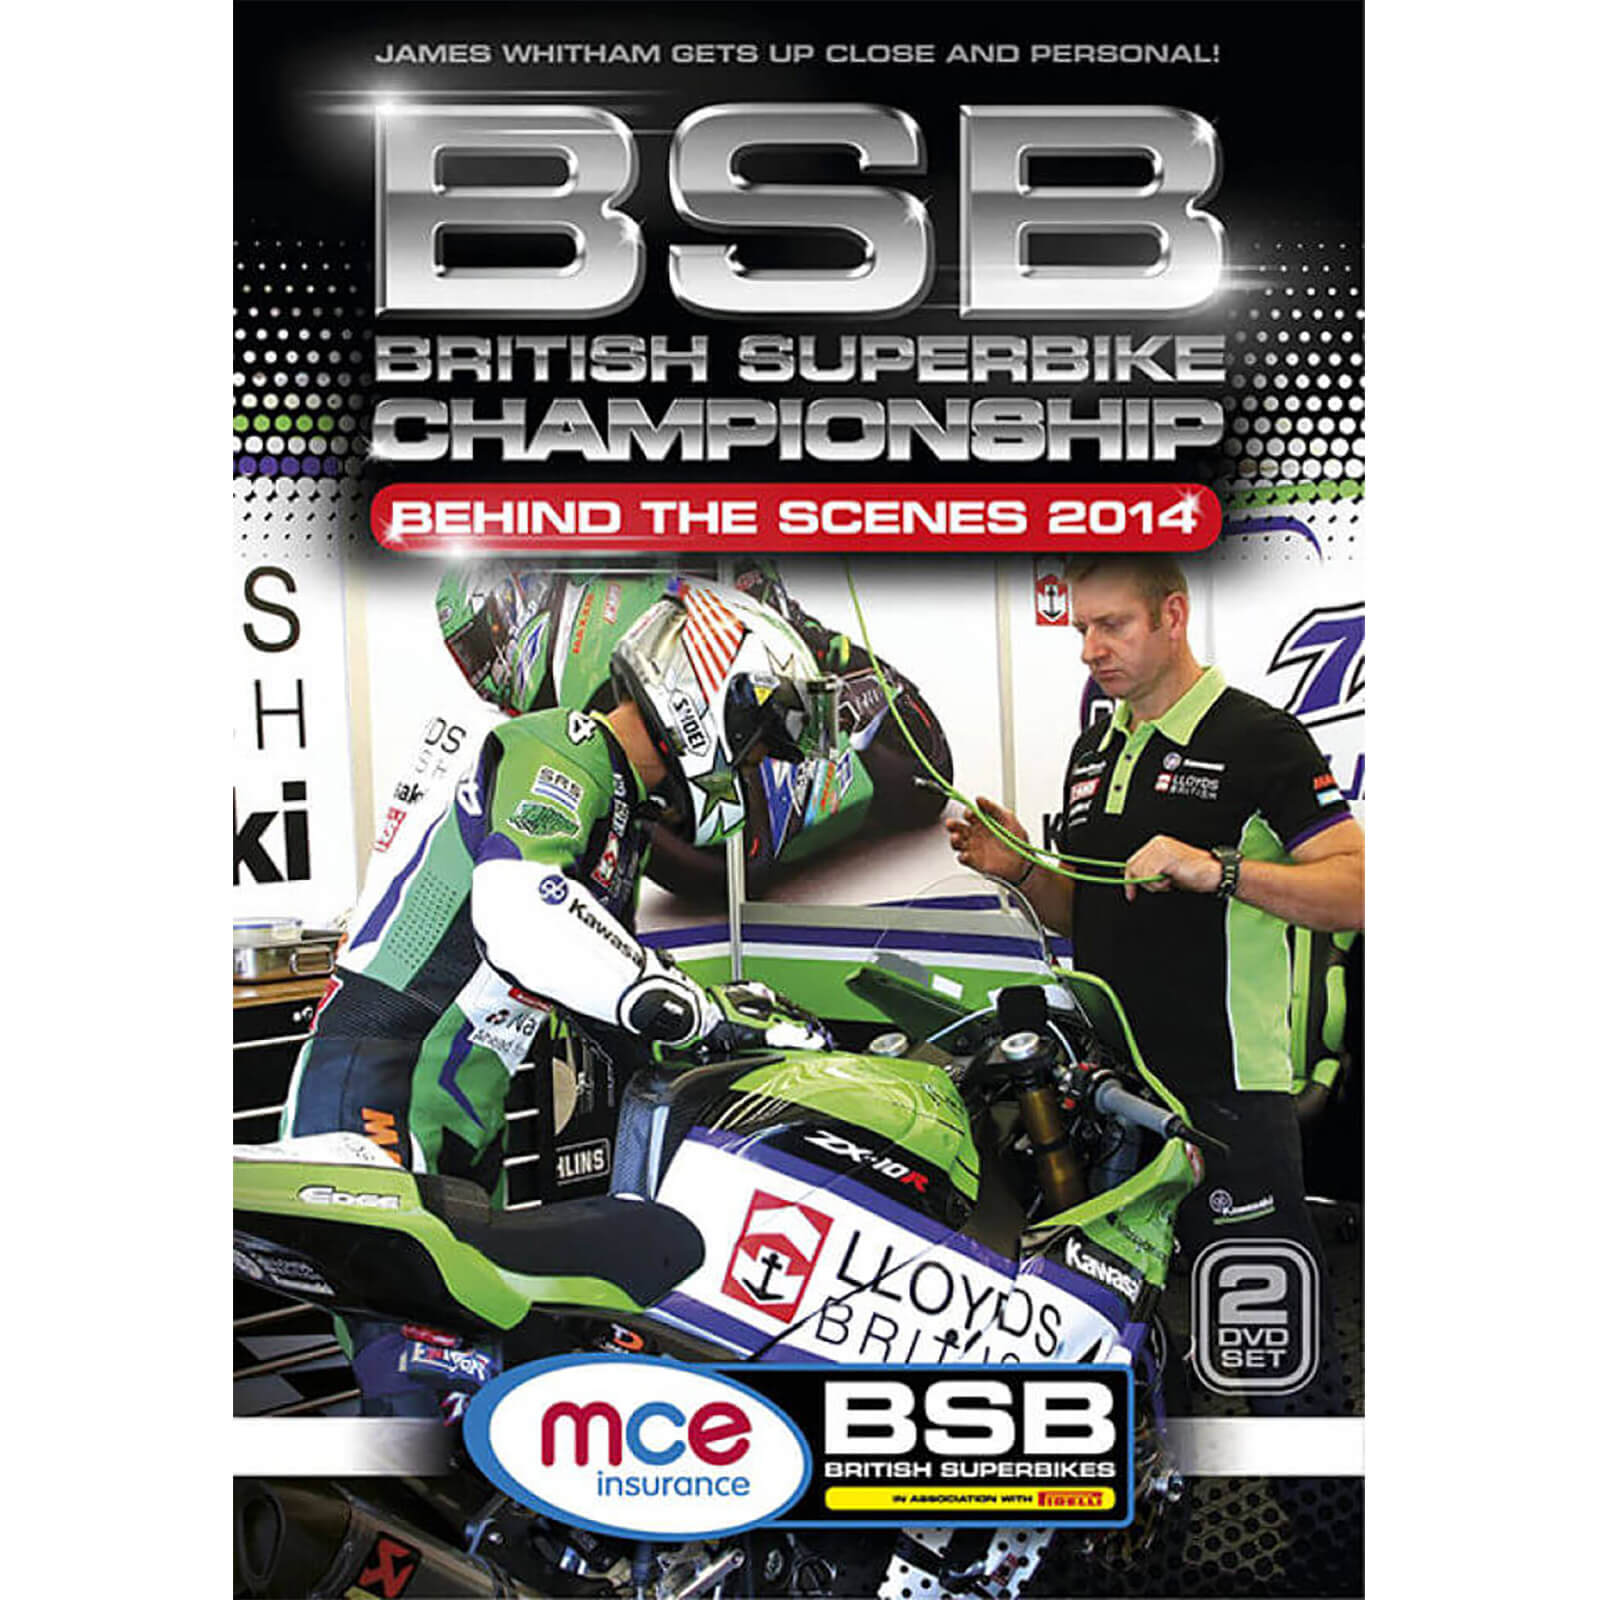 British Superbike Championship Season Review 2014 - Behind The Scenes von Odeon Entertainment